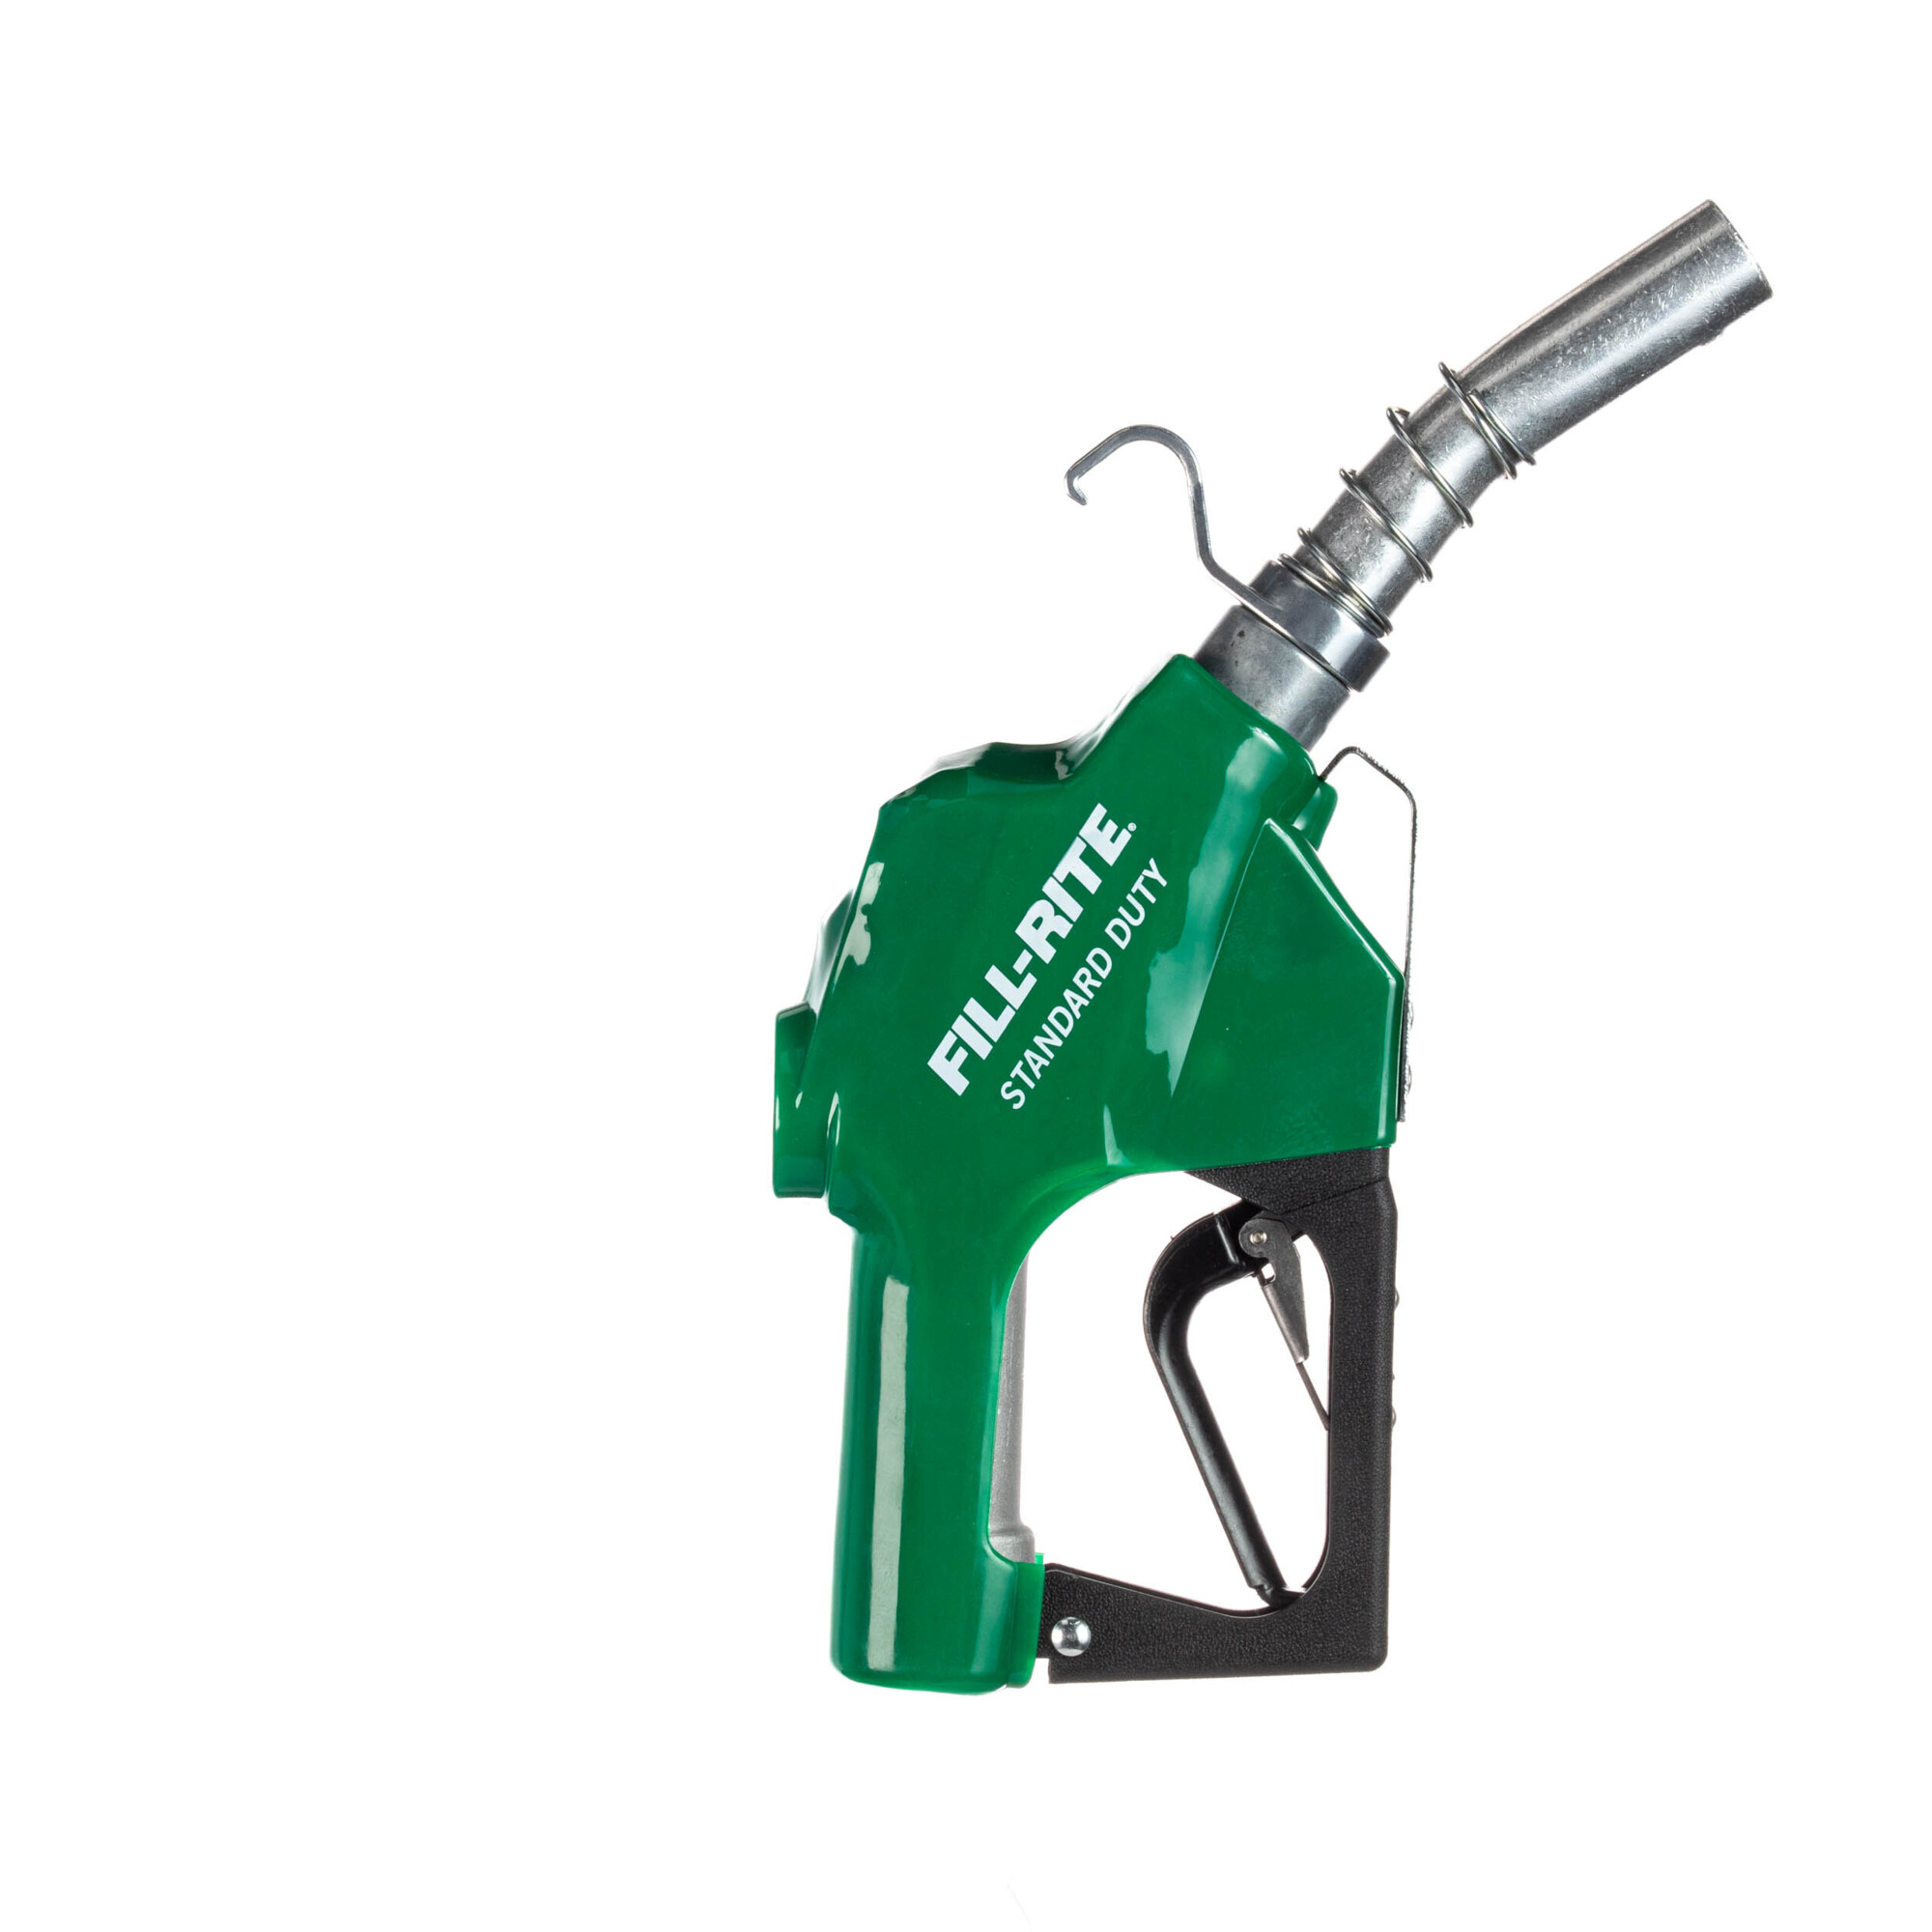 Fill-Rite Automatic Standard-Duty Fuel Nozzle â 1Inch NPT, Diesel Spout, Green Boot, Model SDN100GAN